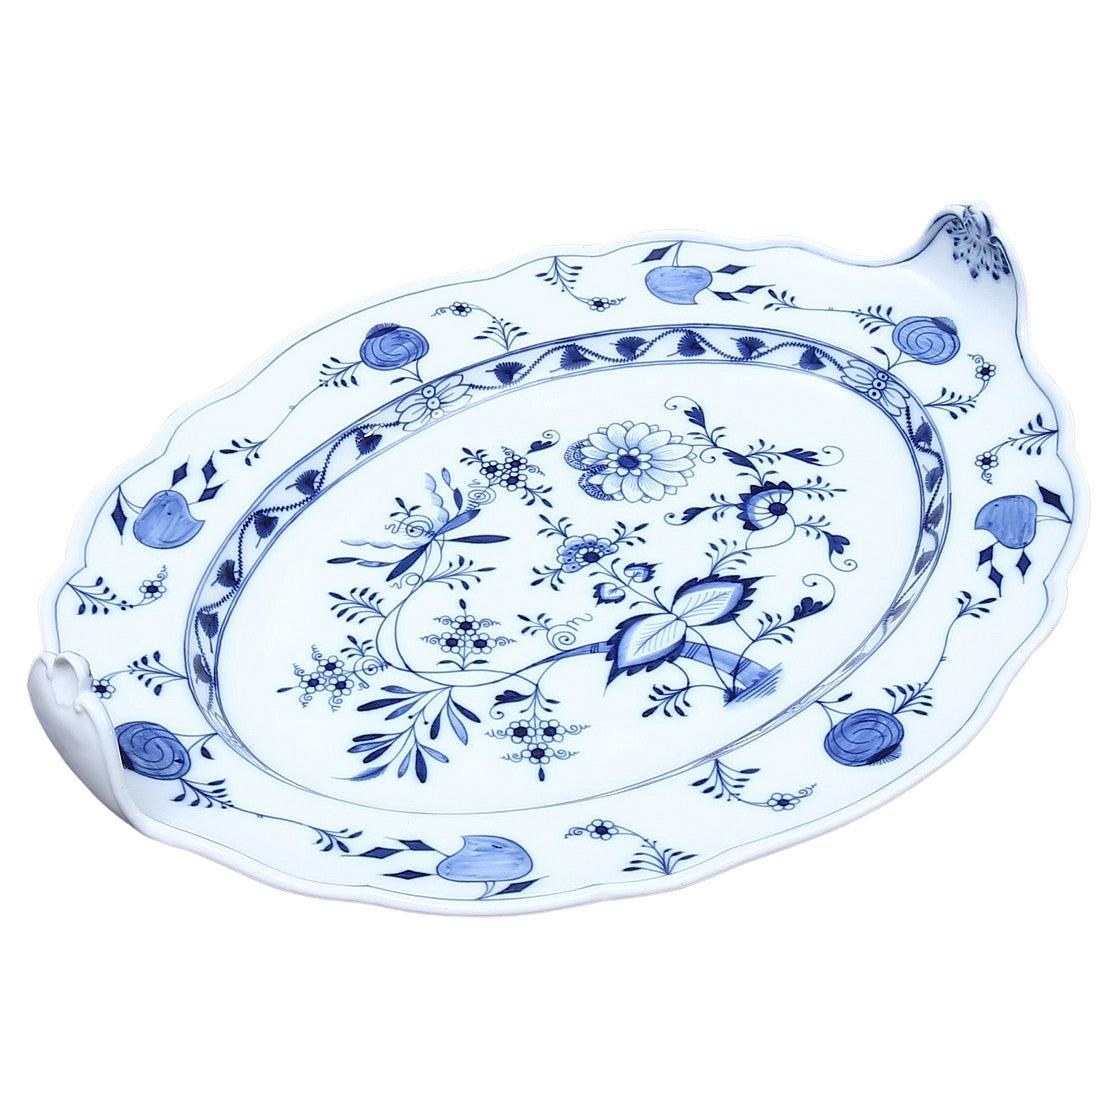 Carl Teichert, Meissen Porcelain Blue Onion Platter, circa 1880s